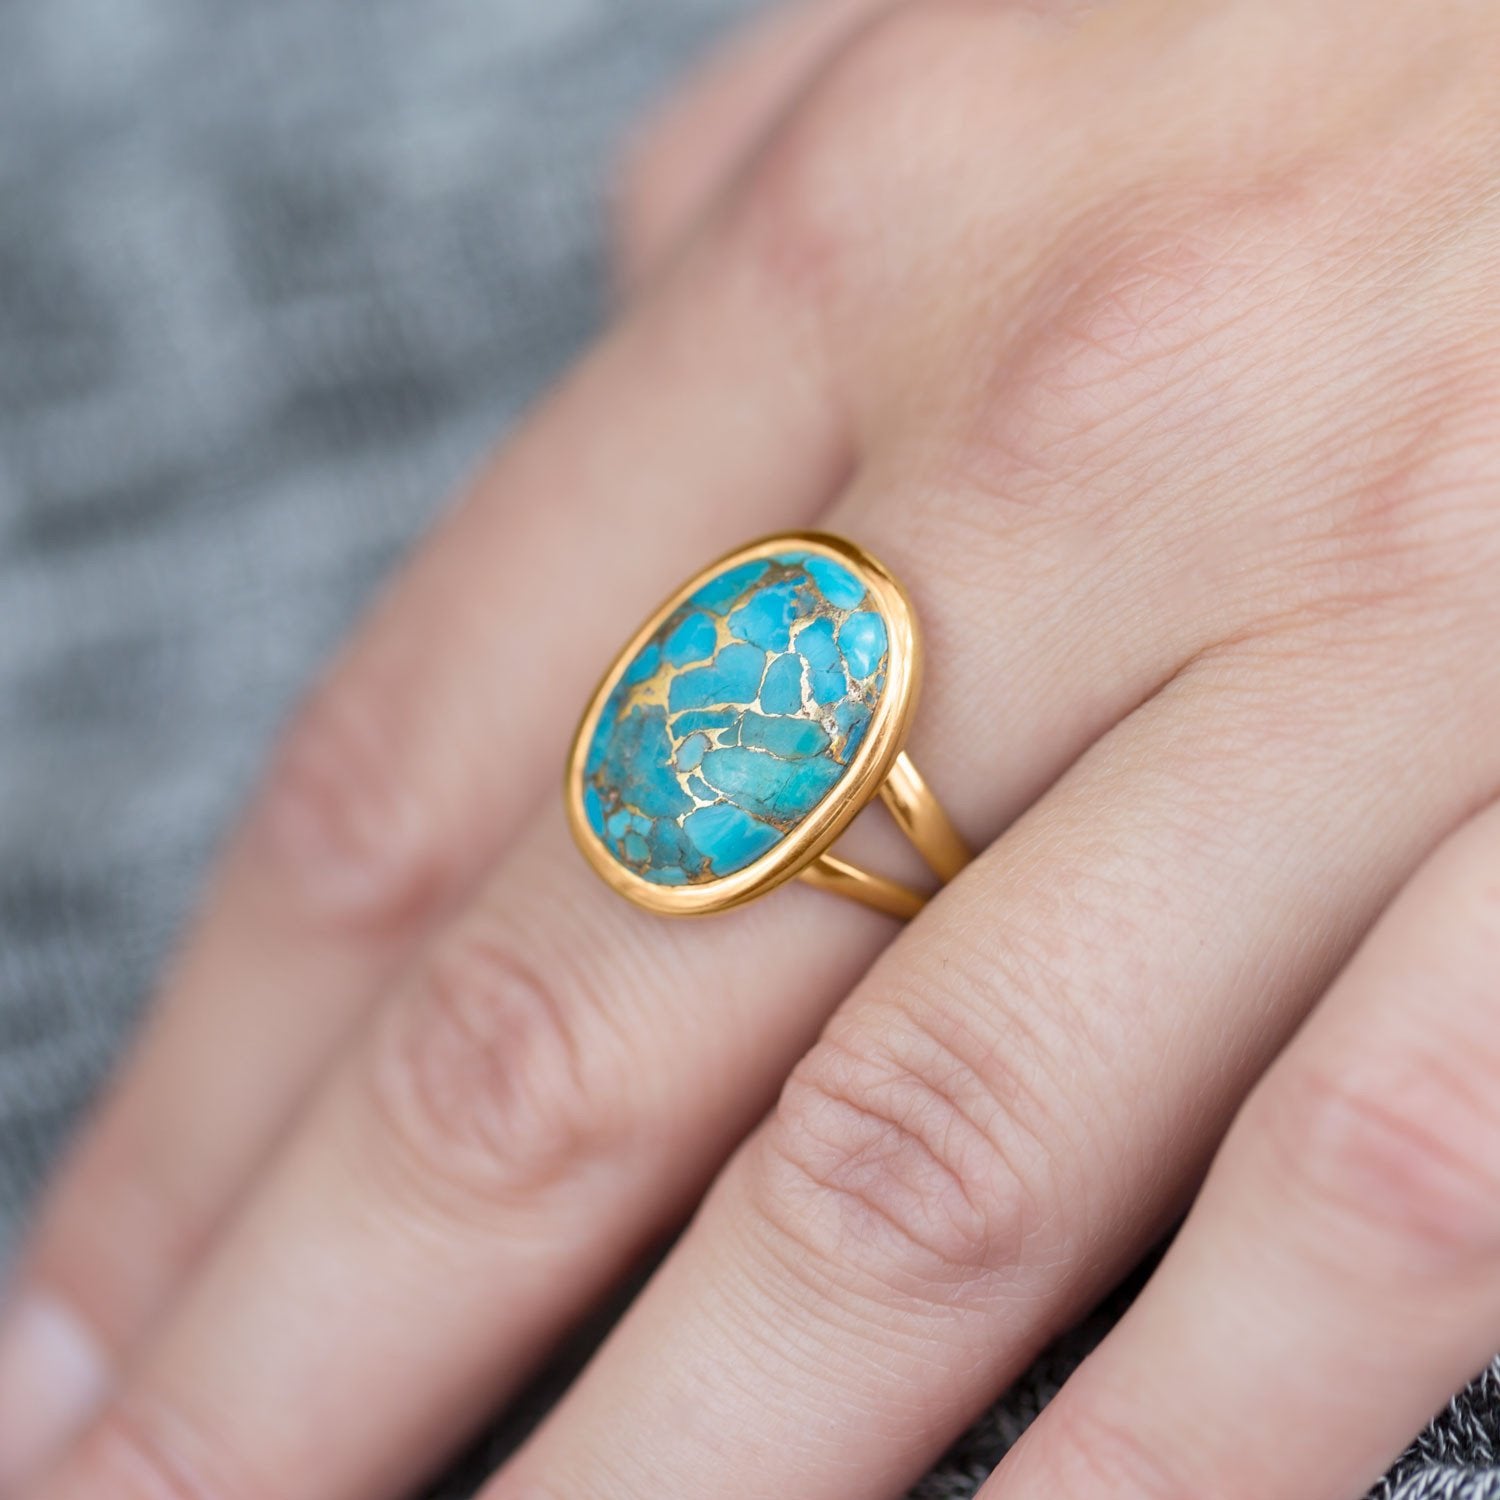 14 Karat Gold Plated Stabilized Turquoise Ring - Joyeria Lady